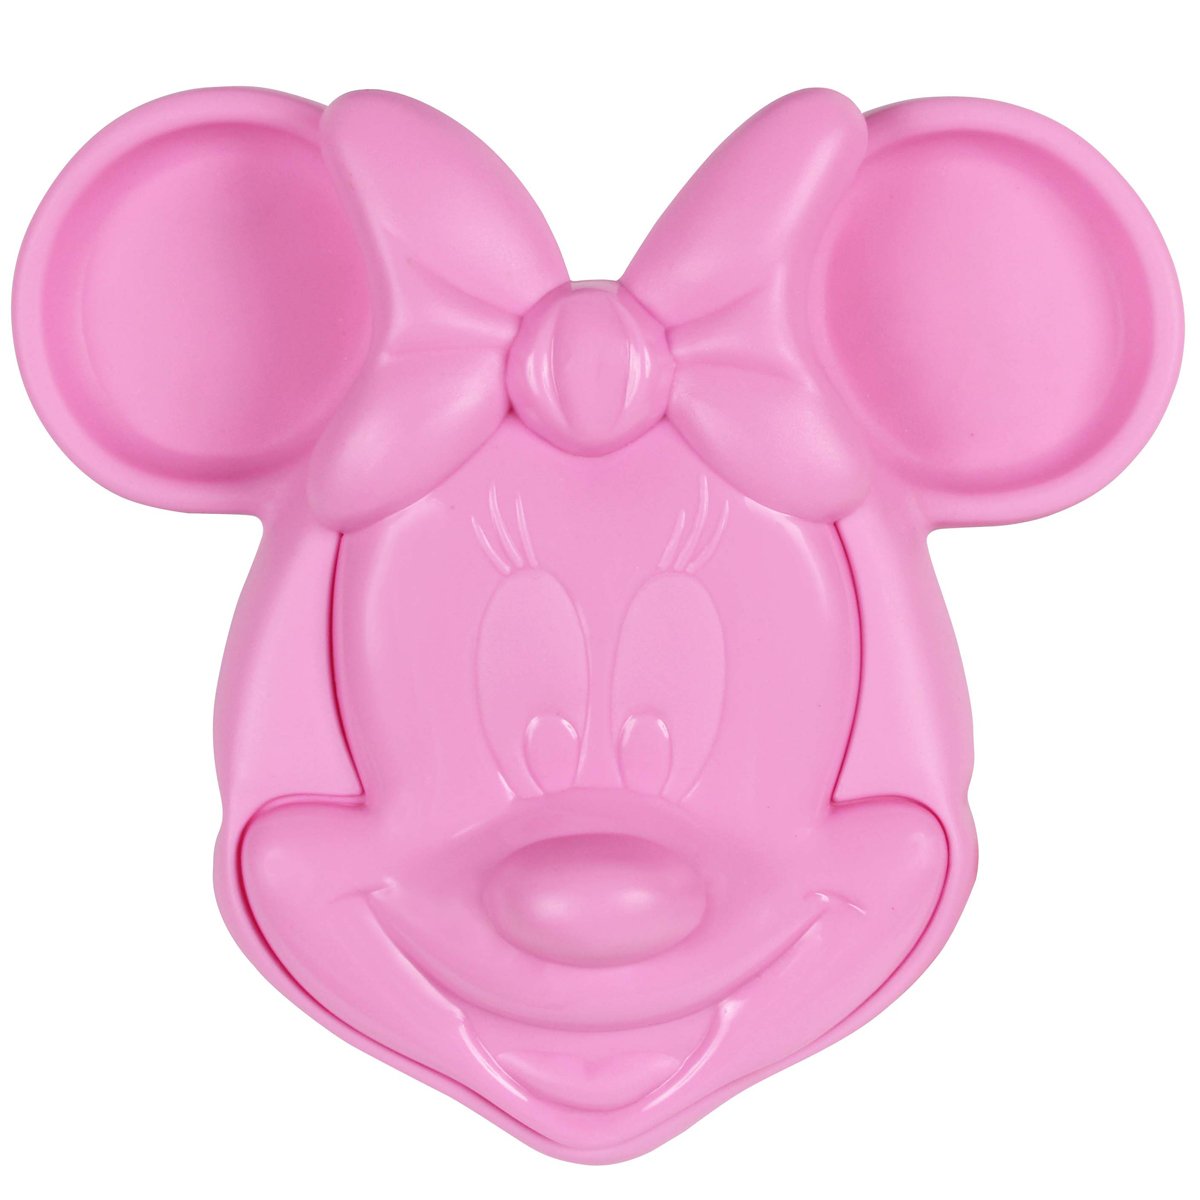 Prato Infantil Alimentação do Bebê com Tampa e Divisórias Formato Minnie Mouse 3d Rosa Disney - 1